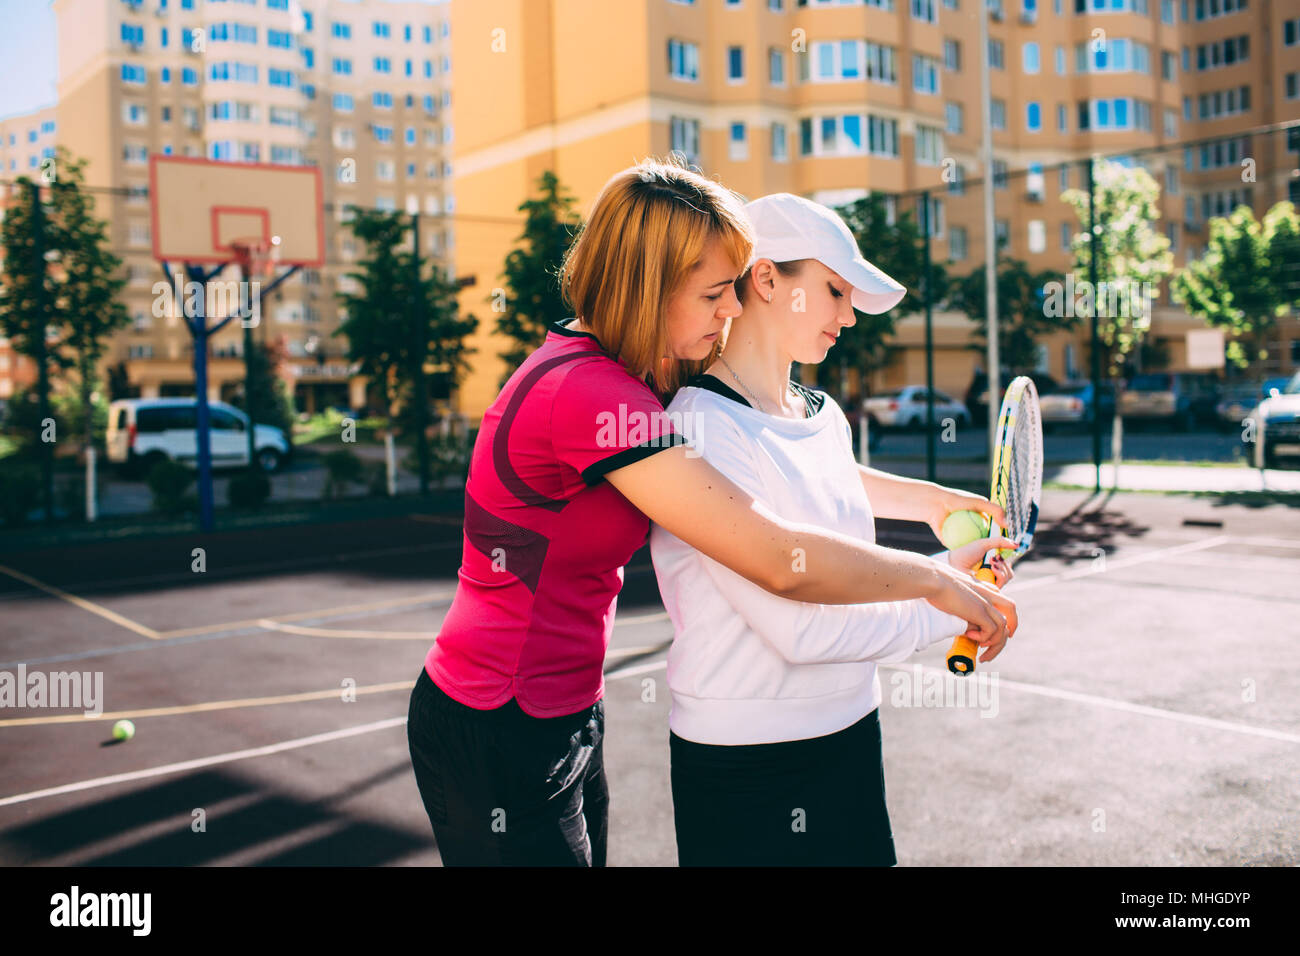 leçon de tennis. enseigner le tennis à une jeune femme, tout en se tenant debout sur le court de tennis de la ville par une journée ensoleillée Banque D'Images